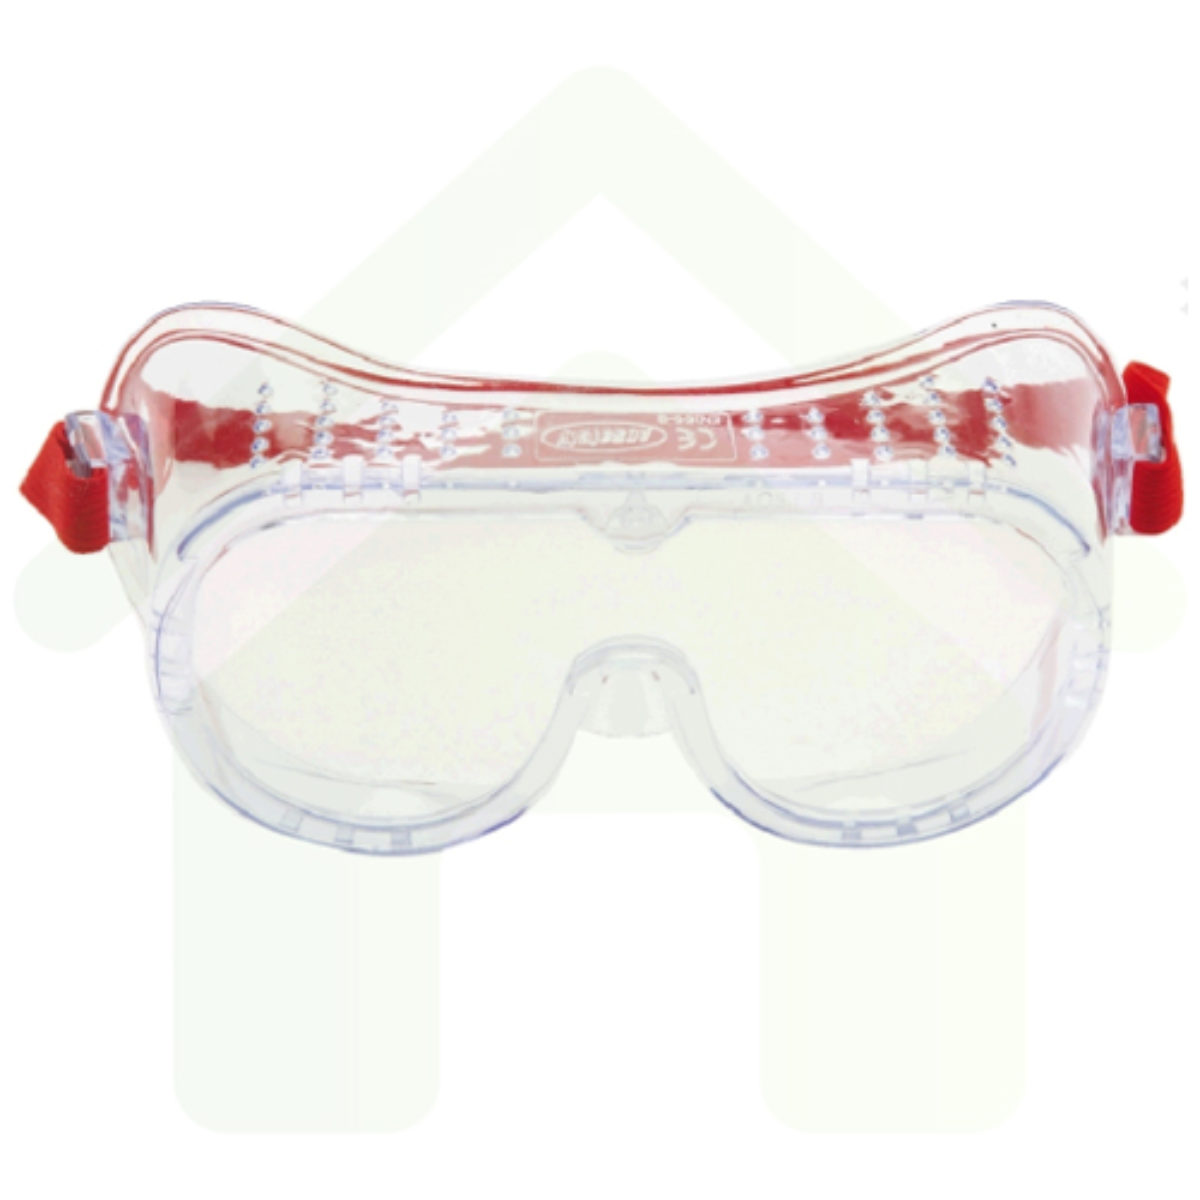 3M Veiligheidsbril Ruimzichtbril Polycarbonaat met blanke lens